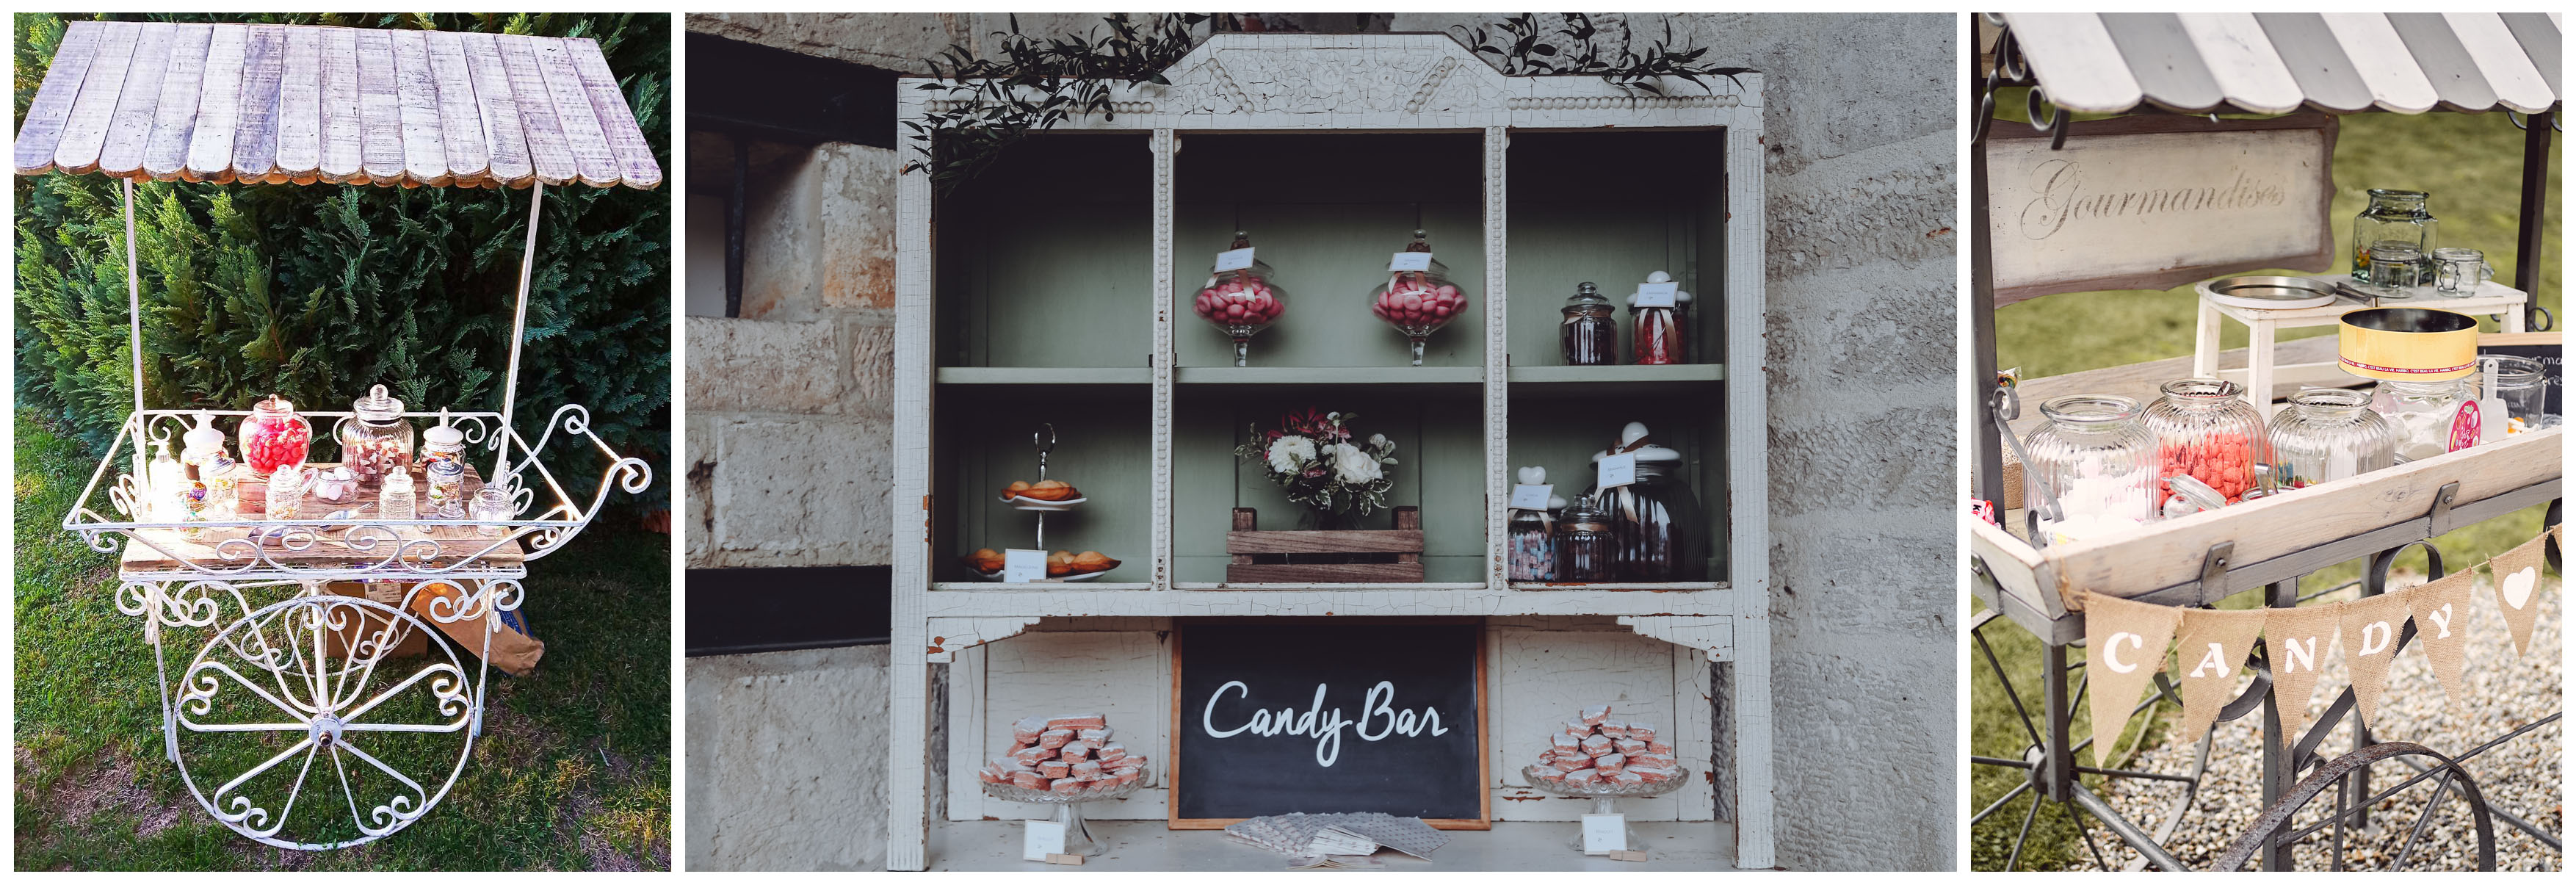 Candy Bar 1